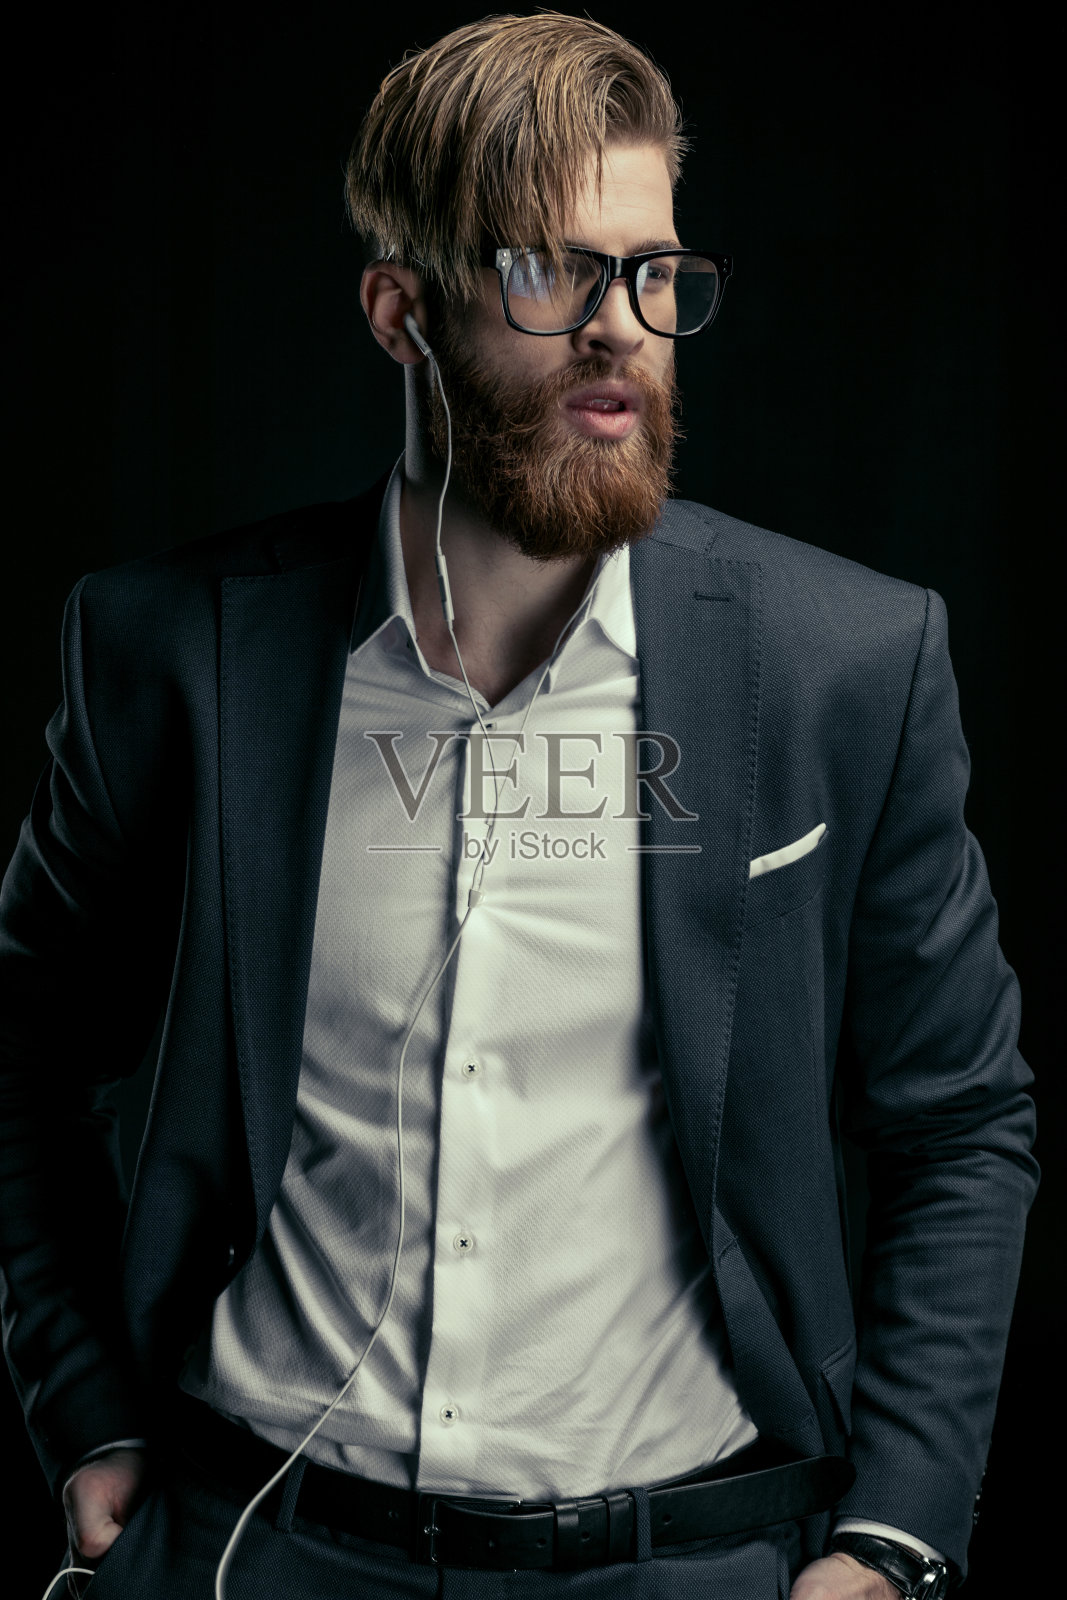 这是一位戴着耳机听音乐的时尚男士的肖像照片摄影图片